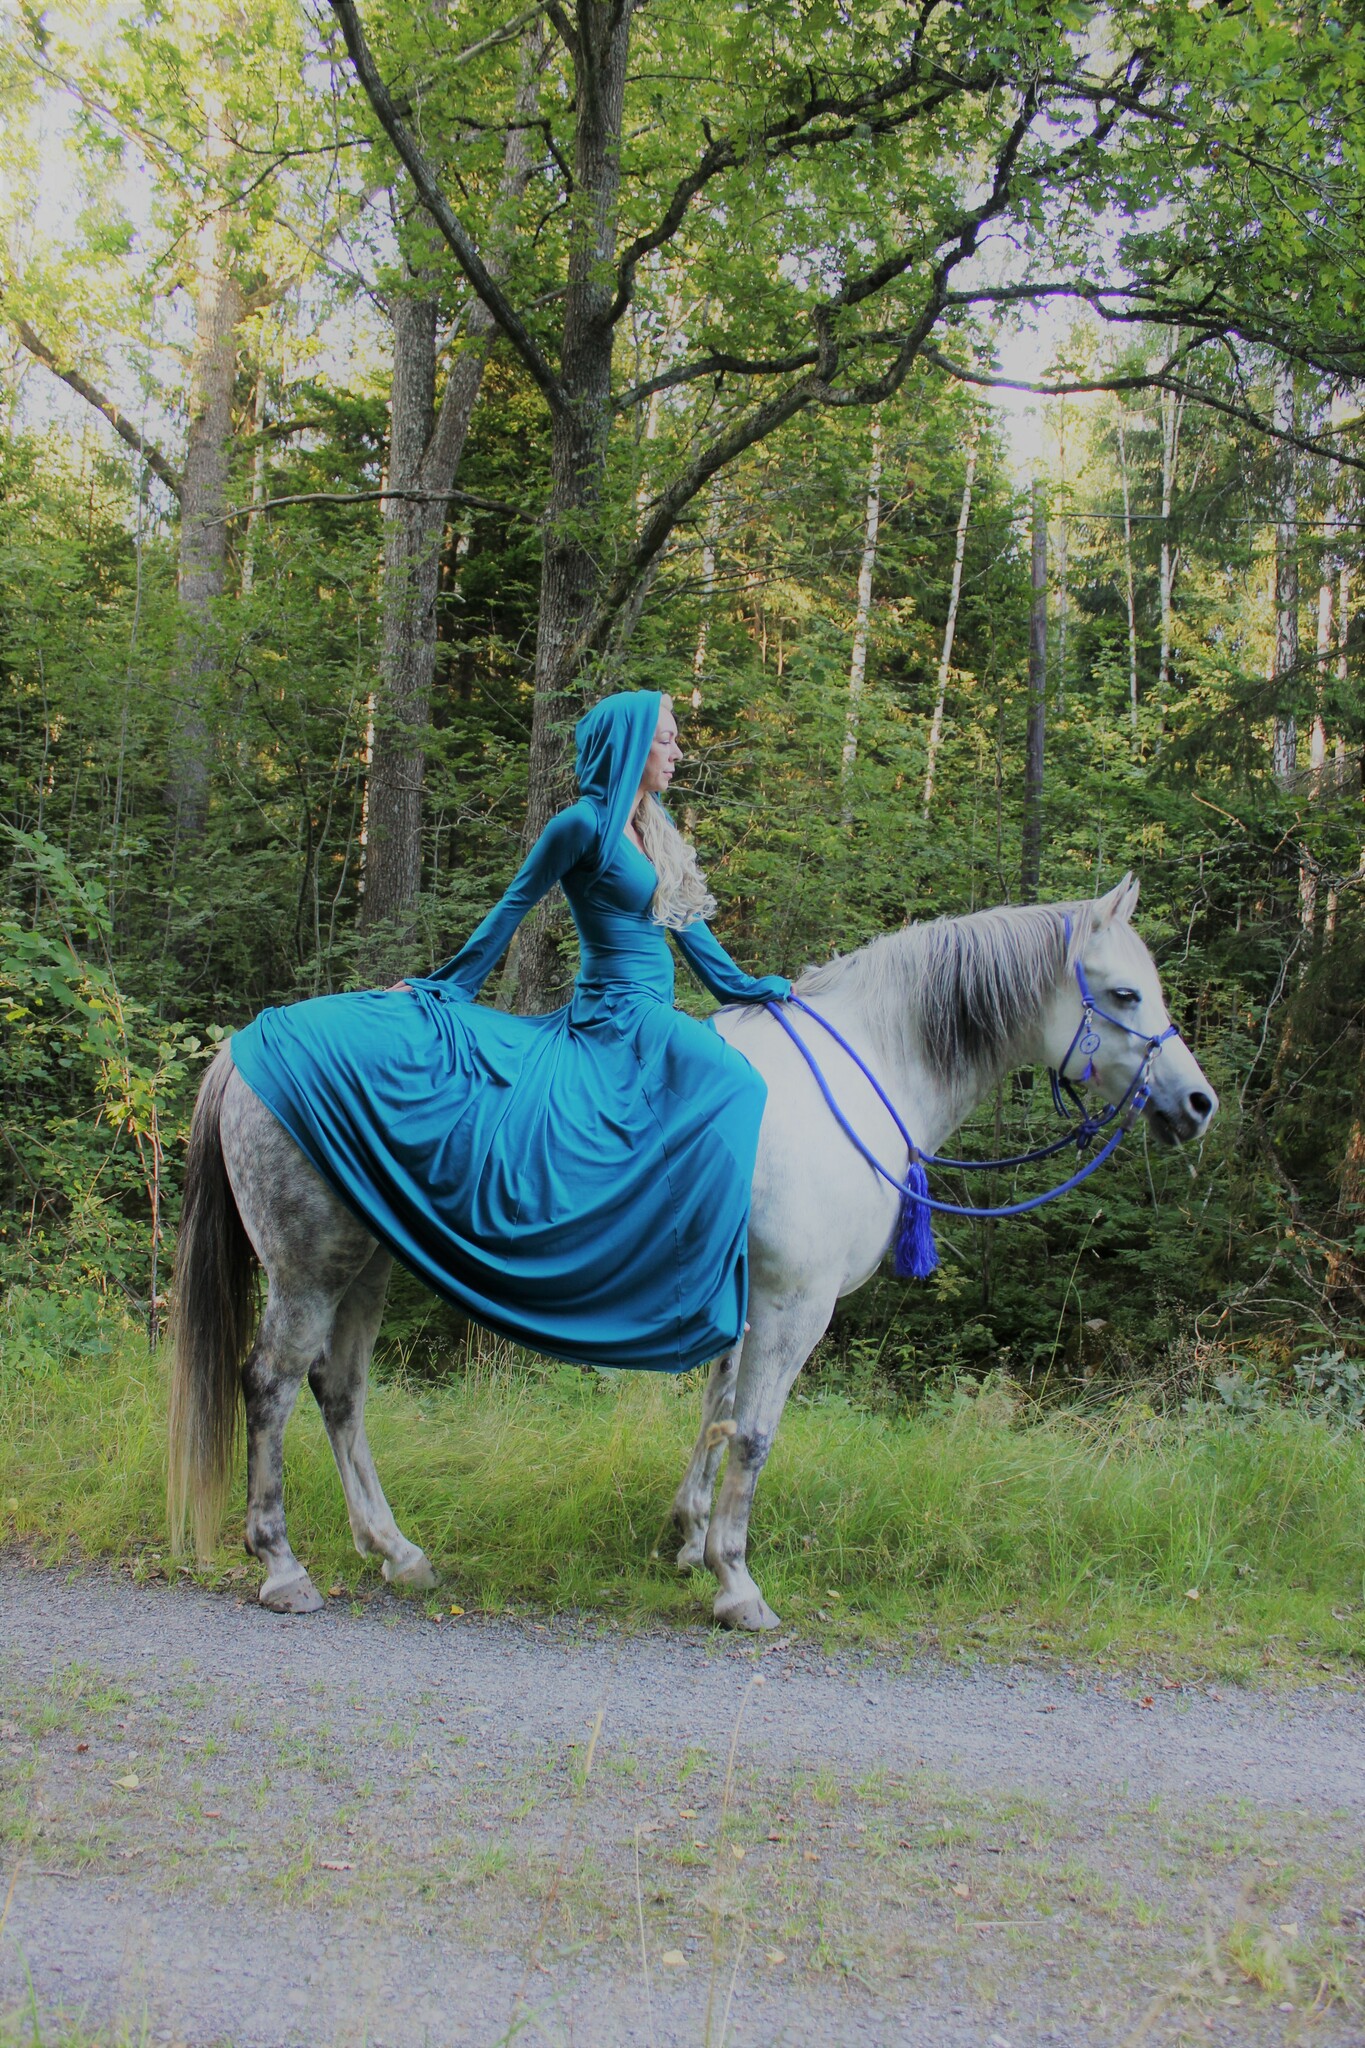 Turkos klänning på hästryggen